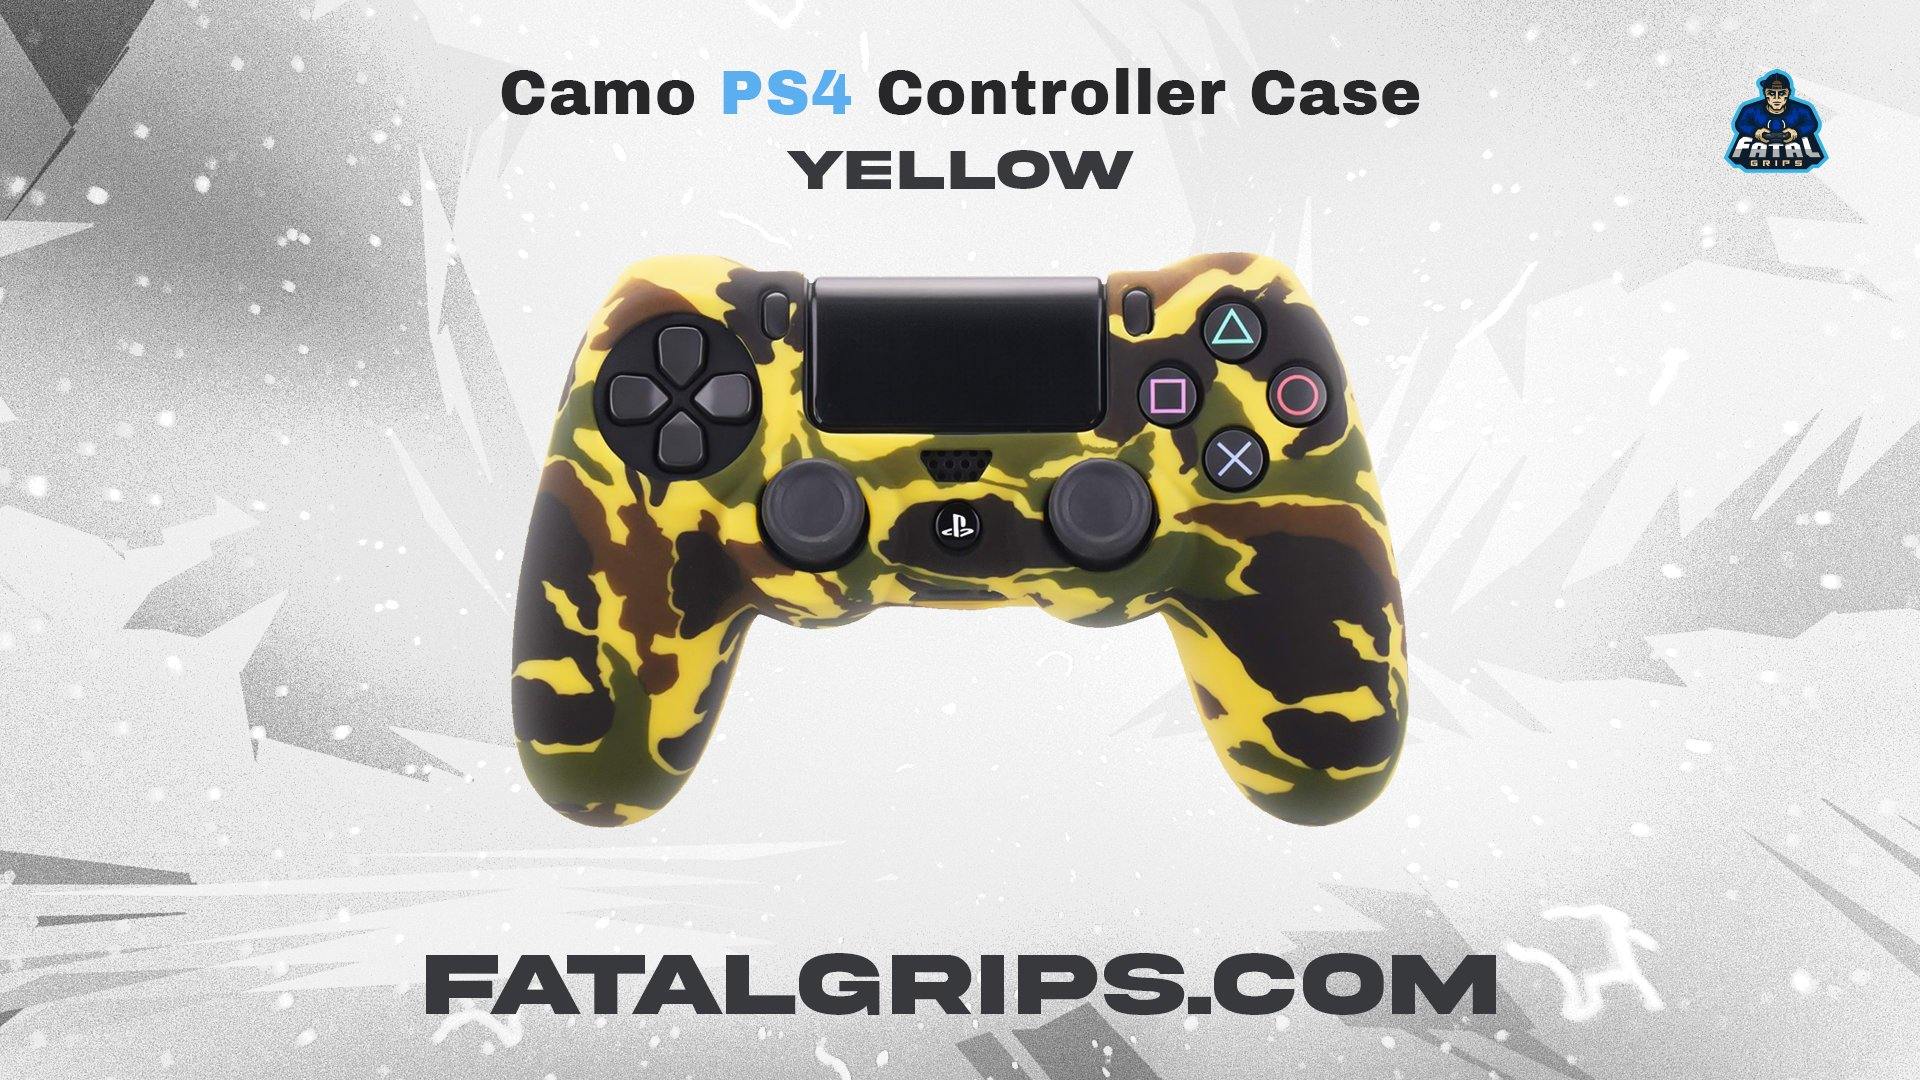 Desert Camo PS4 Controller Case - Fatal Grips